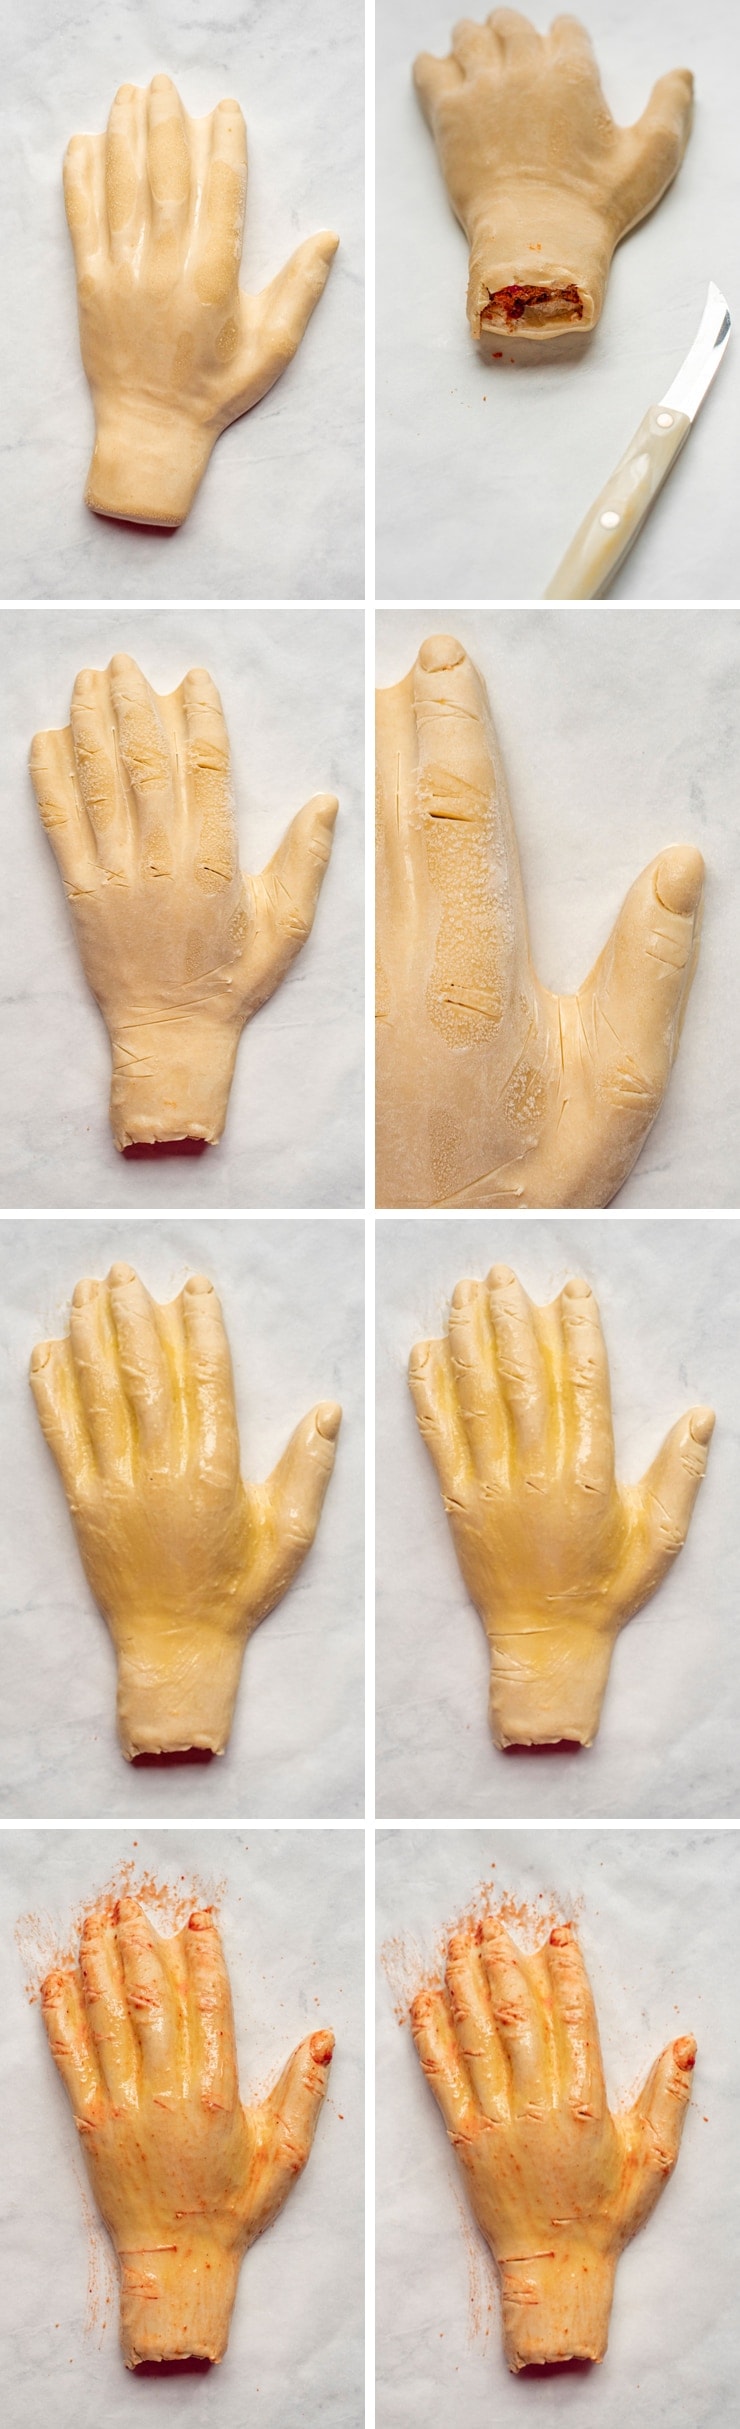 Sloppy Joes Hand Pies Collage 3 - Sloppy Joe's Hand Pies